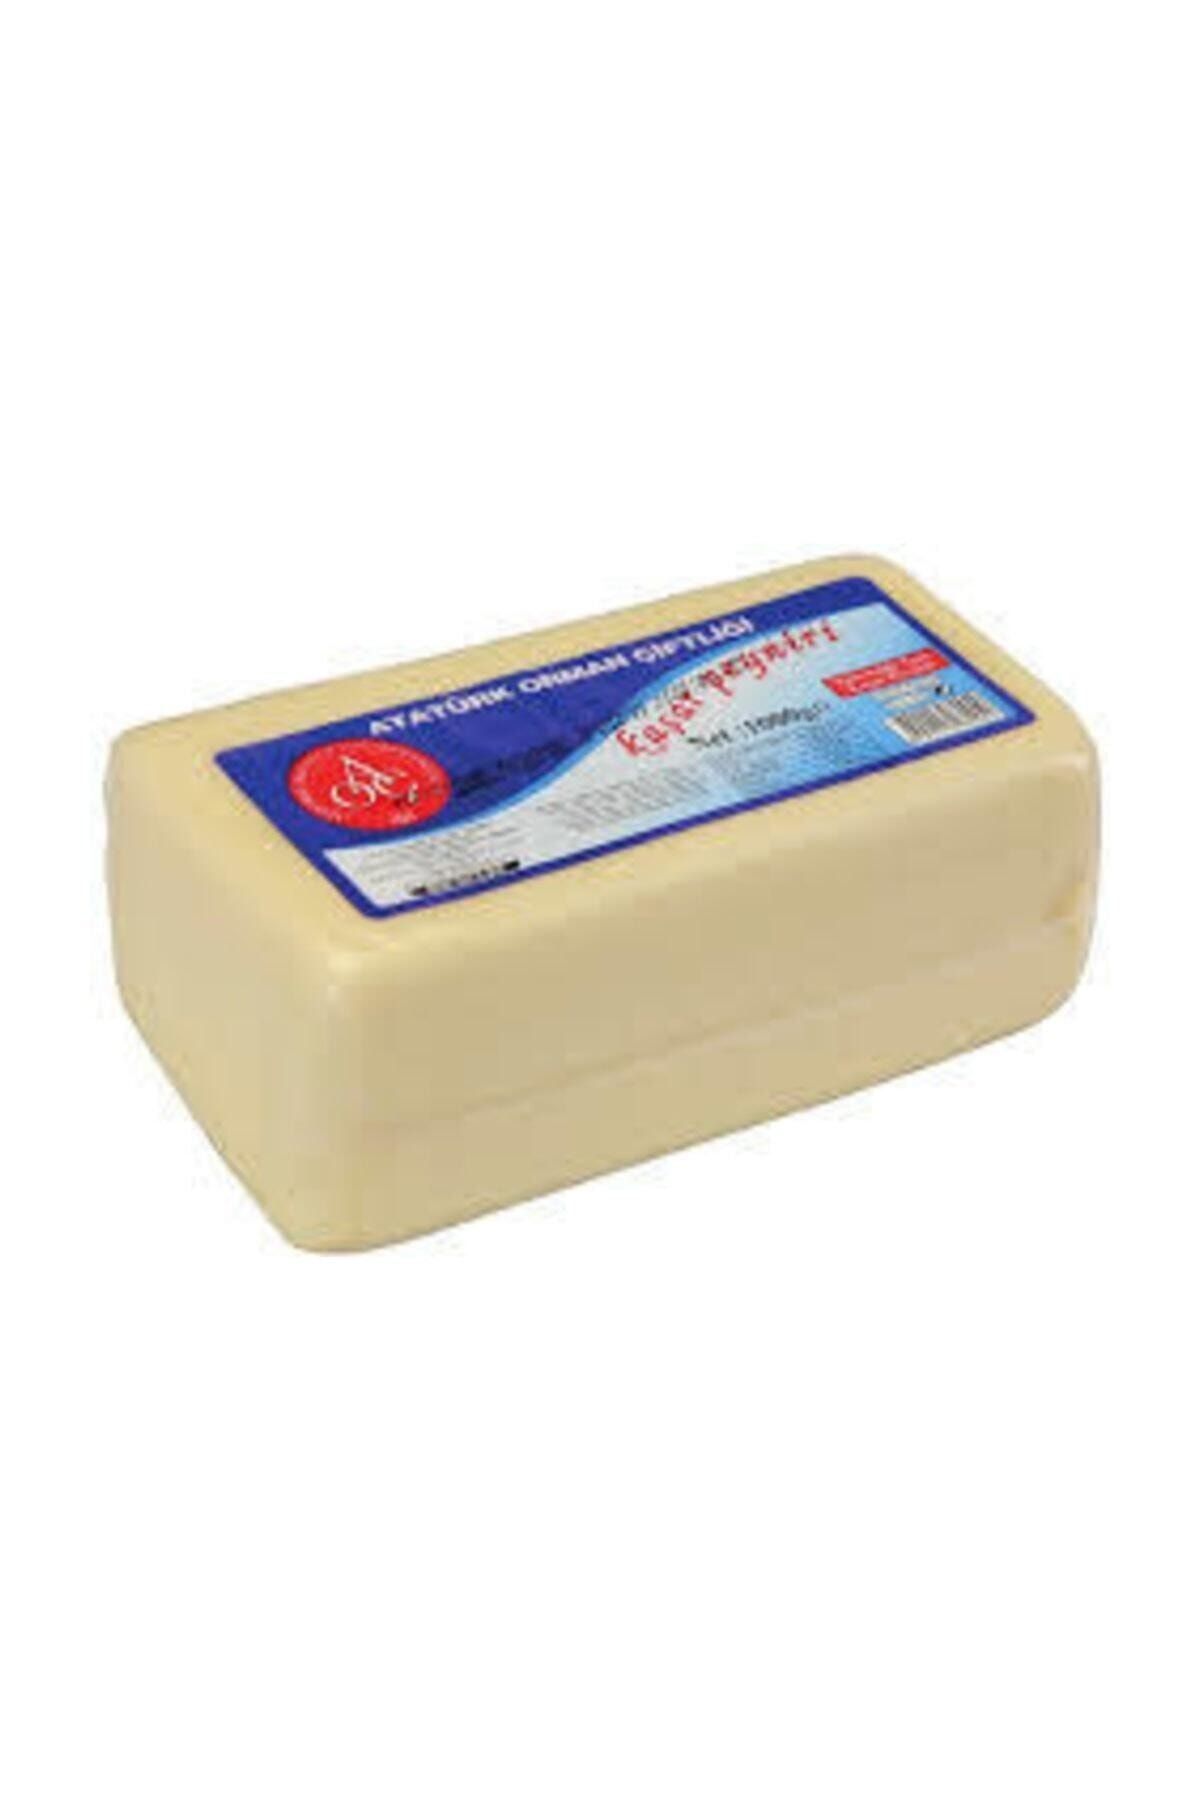 Atatürk Orman Çiftliği Kaşar Peynir 900 gr